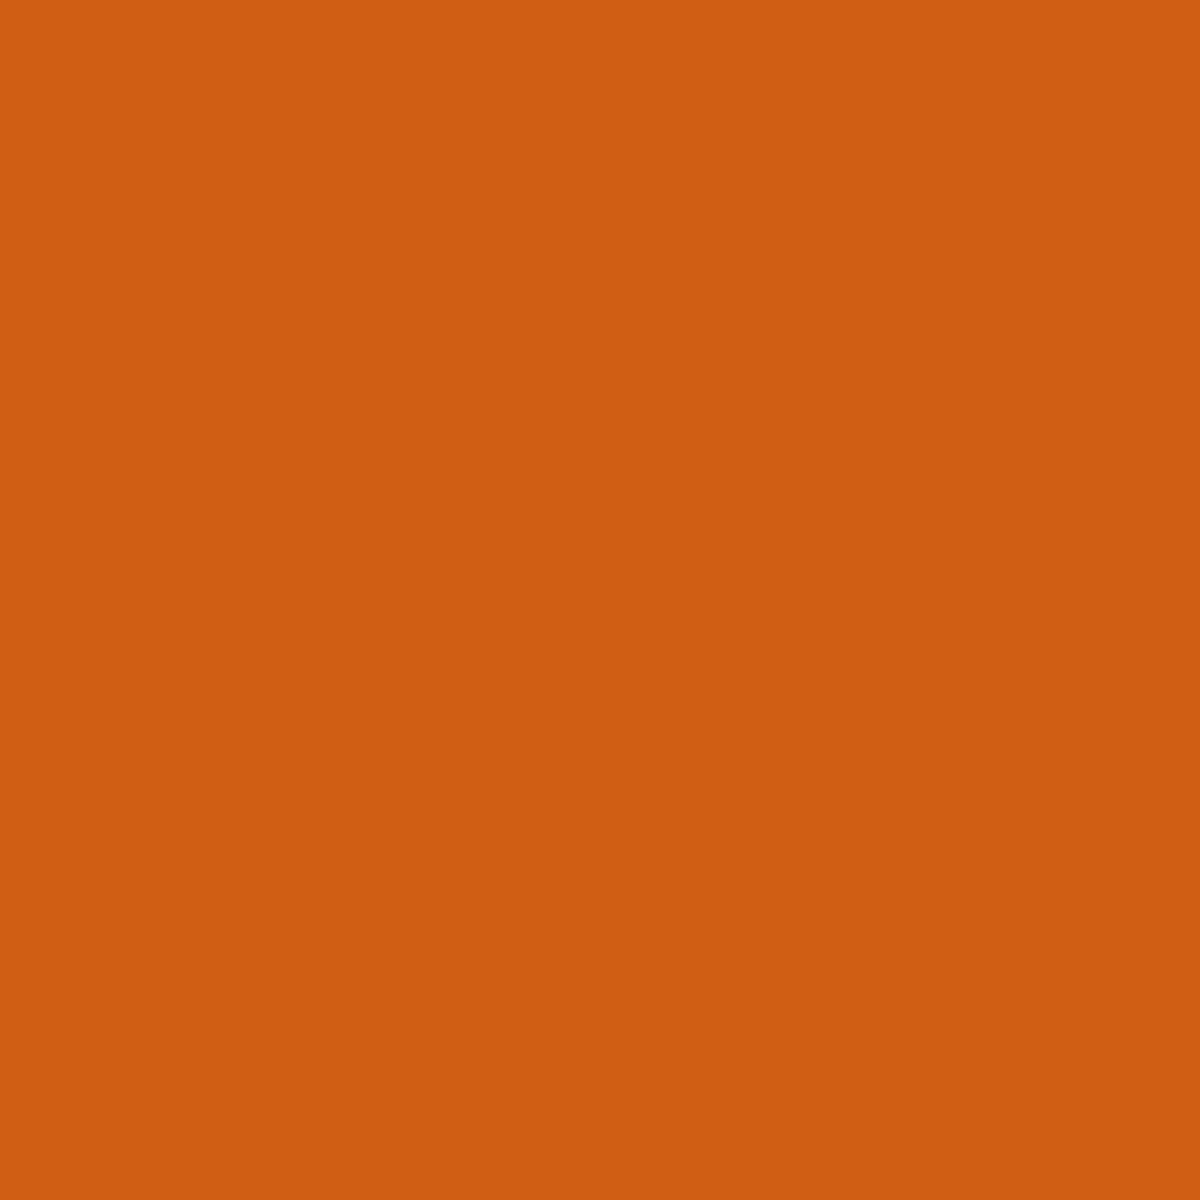 Lines_Exploration_01_v02_orange